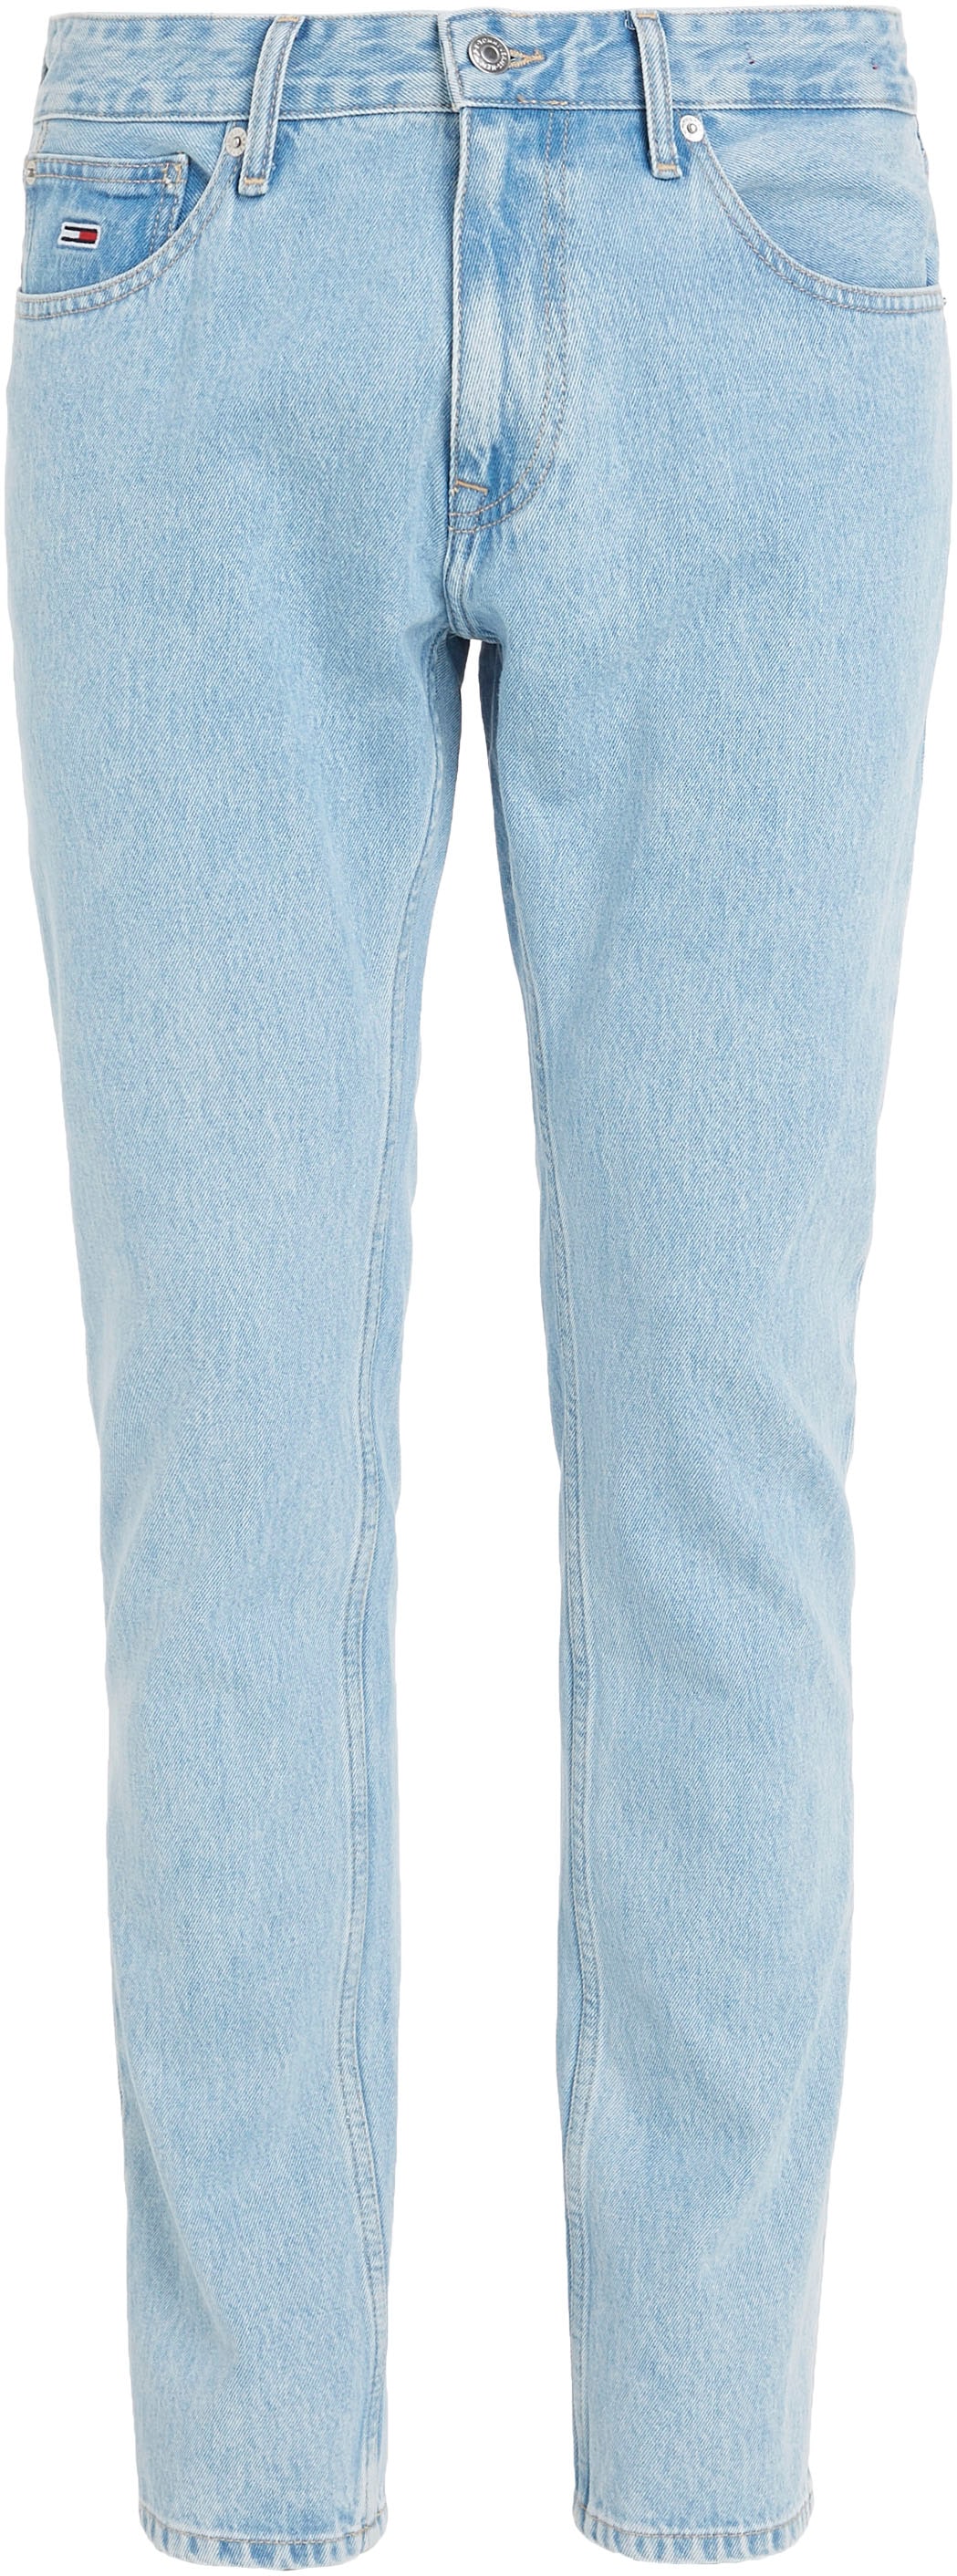 BG4015«, online im »SCANTON OTTO bei Tommy SLIM Slim-fit-Jeans 5-Pocket-Stil bestellen Jeans